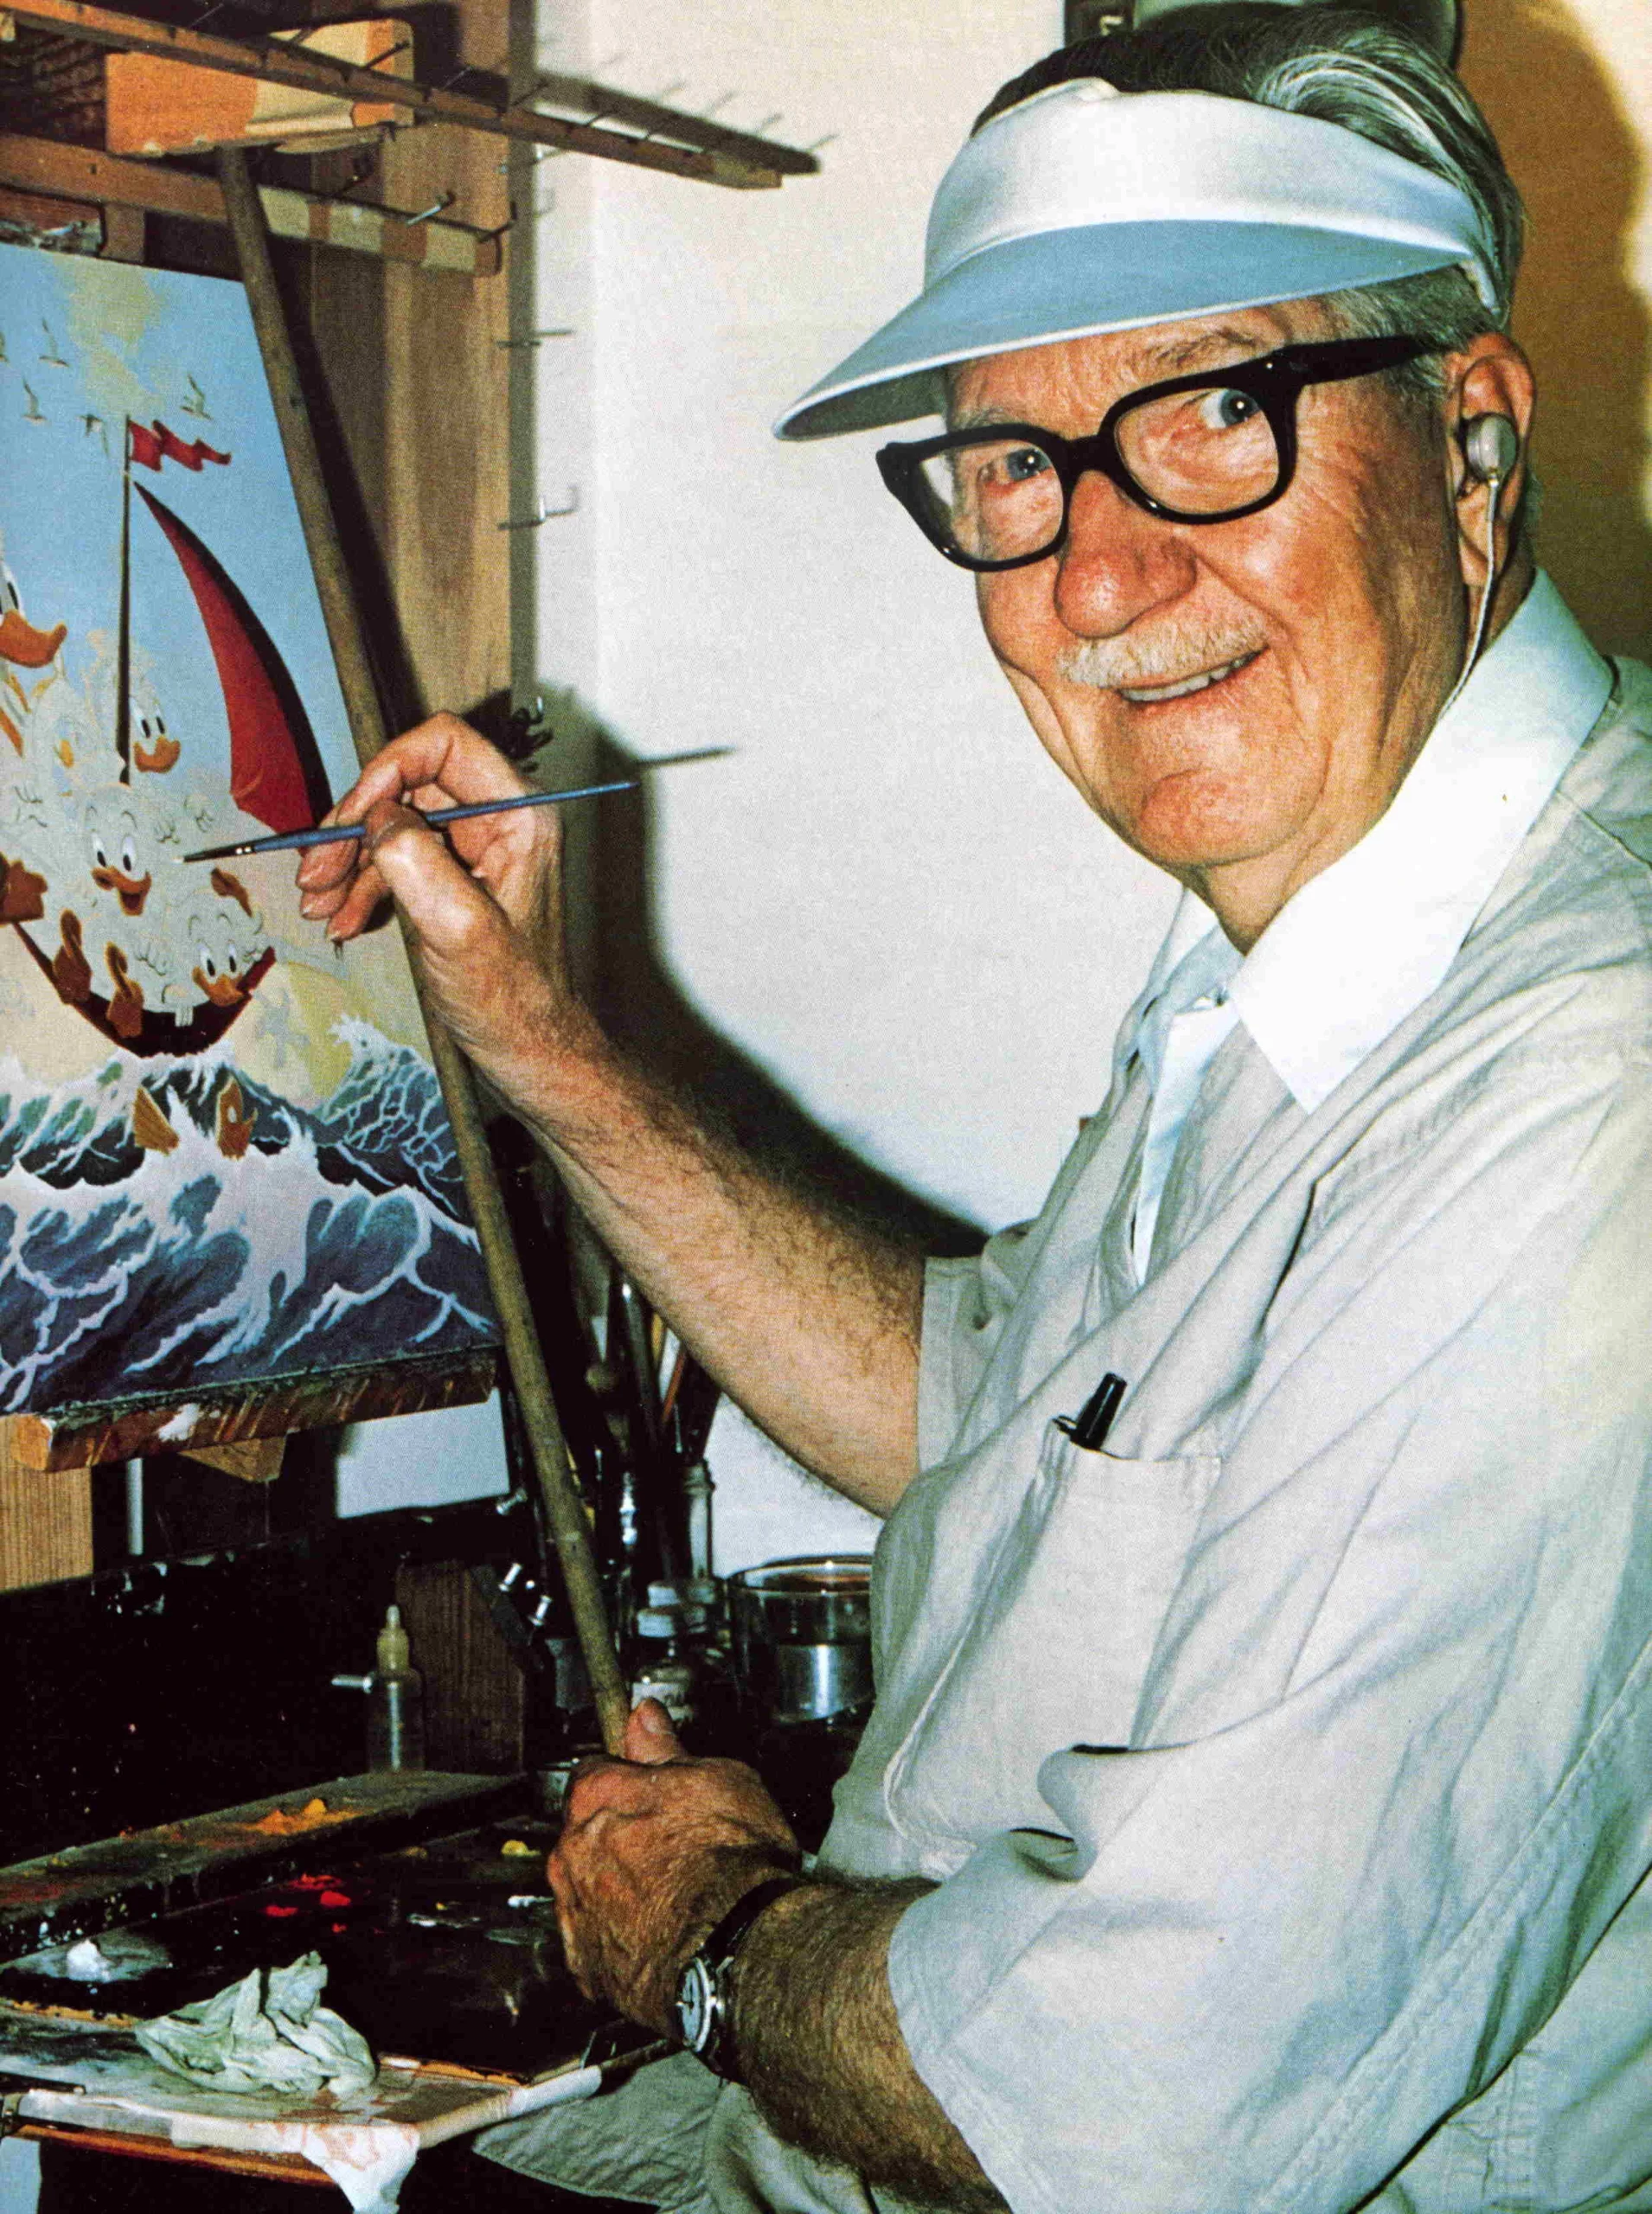 Homme âgé avec des lunettes et une casquette, souriant en peignant une scène maritime colorée sur une toile dans un studio bien éclairé, rappelant le style de Carl Barks.